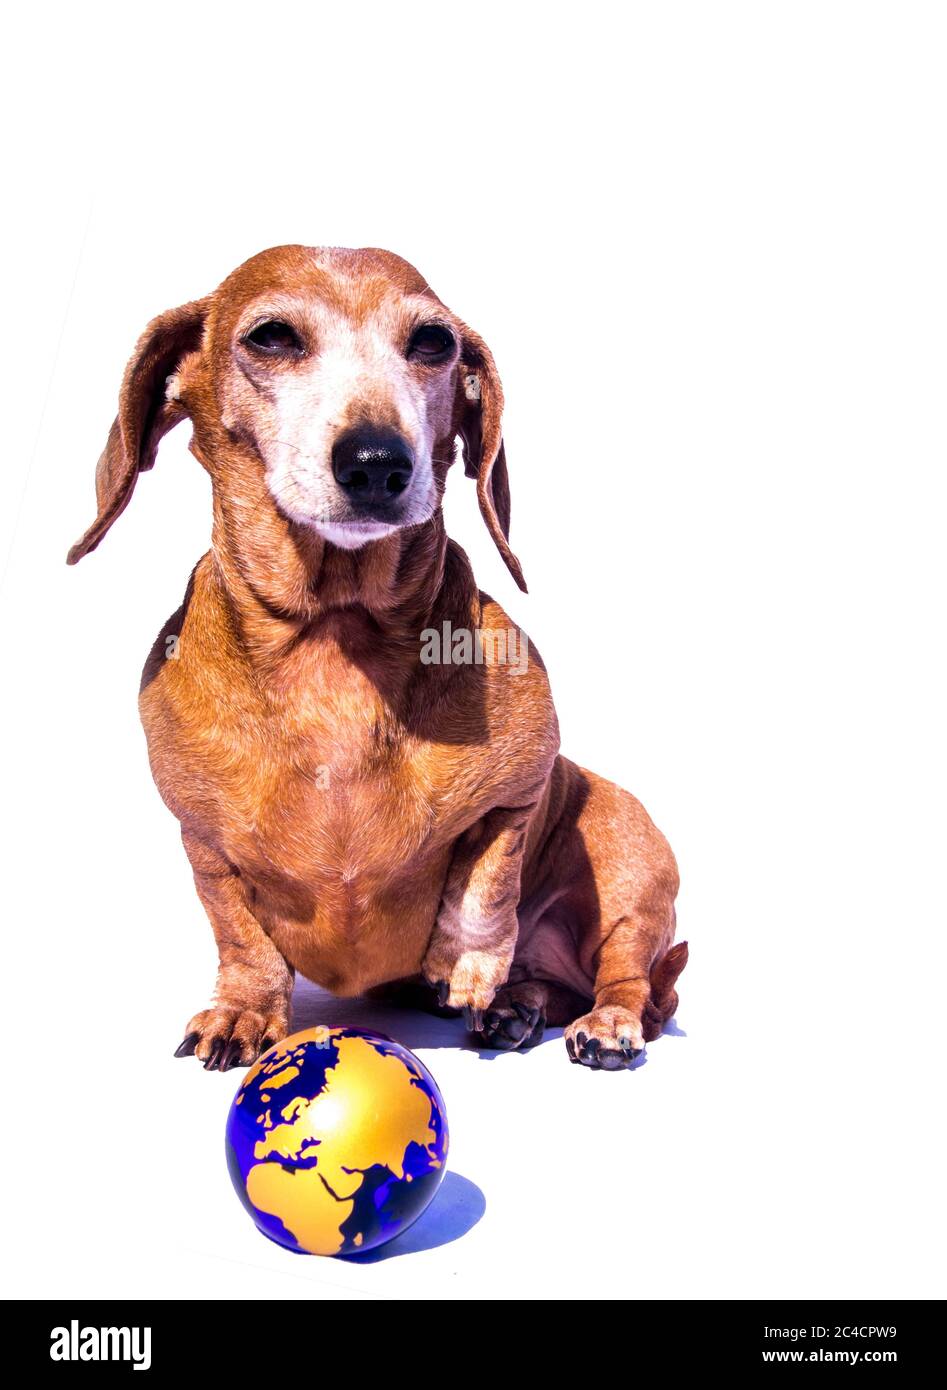 Un vieux Dachshund miniature contre un fond blanc avec la planète Terre dans la scène avec le chien. Banque D'Images